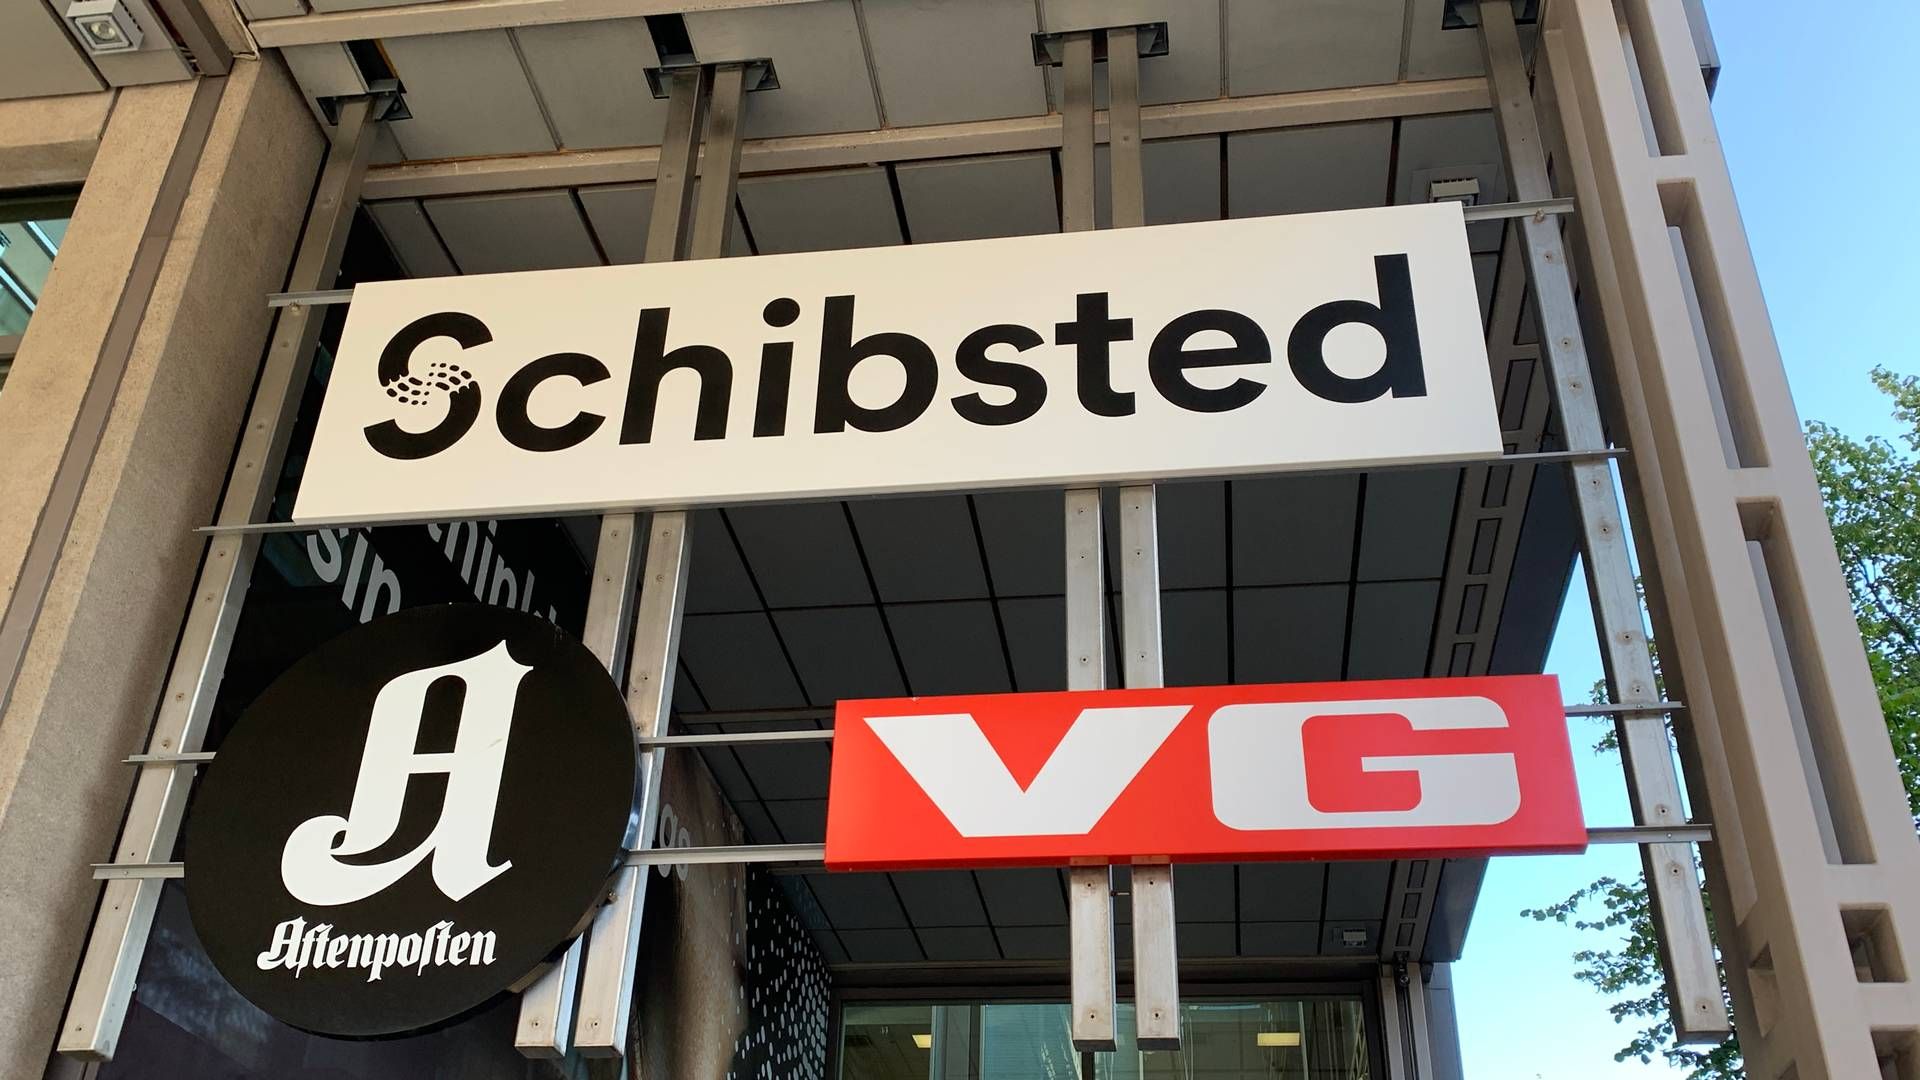 Den norske mediekoncern Schibsted er blandt Nordens største avishuse og ejer blandt andet det norske VG og Aftenposten samt svenske Aftonbladet. | Foto: Schibsted/pr